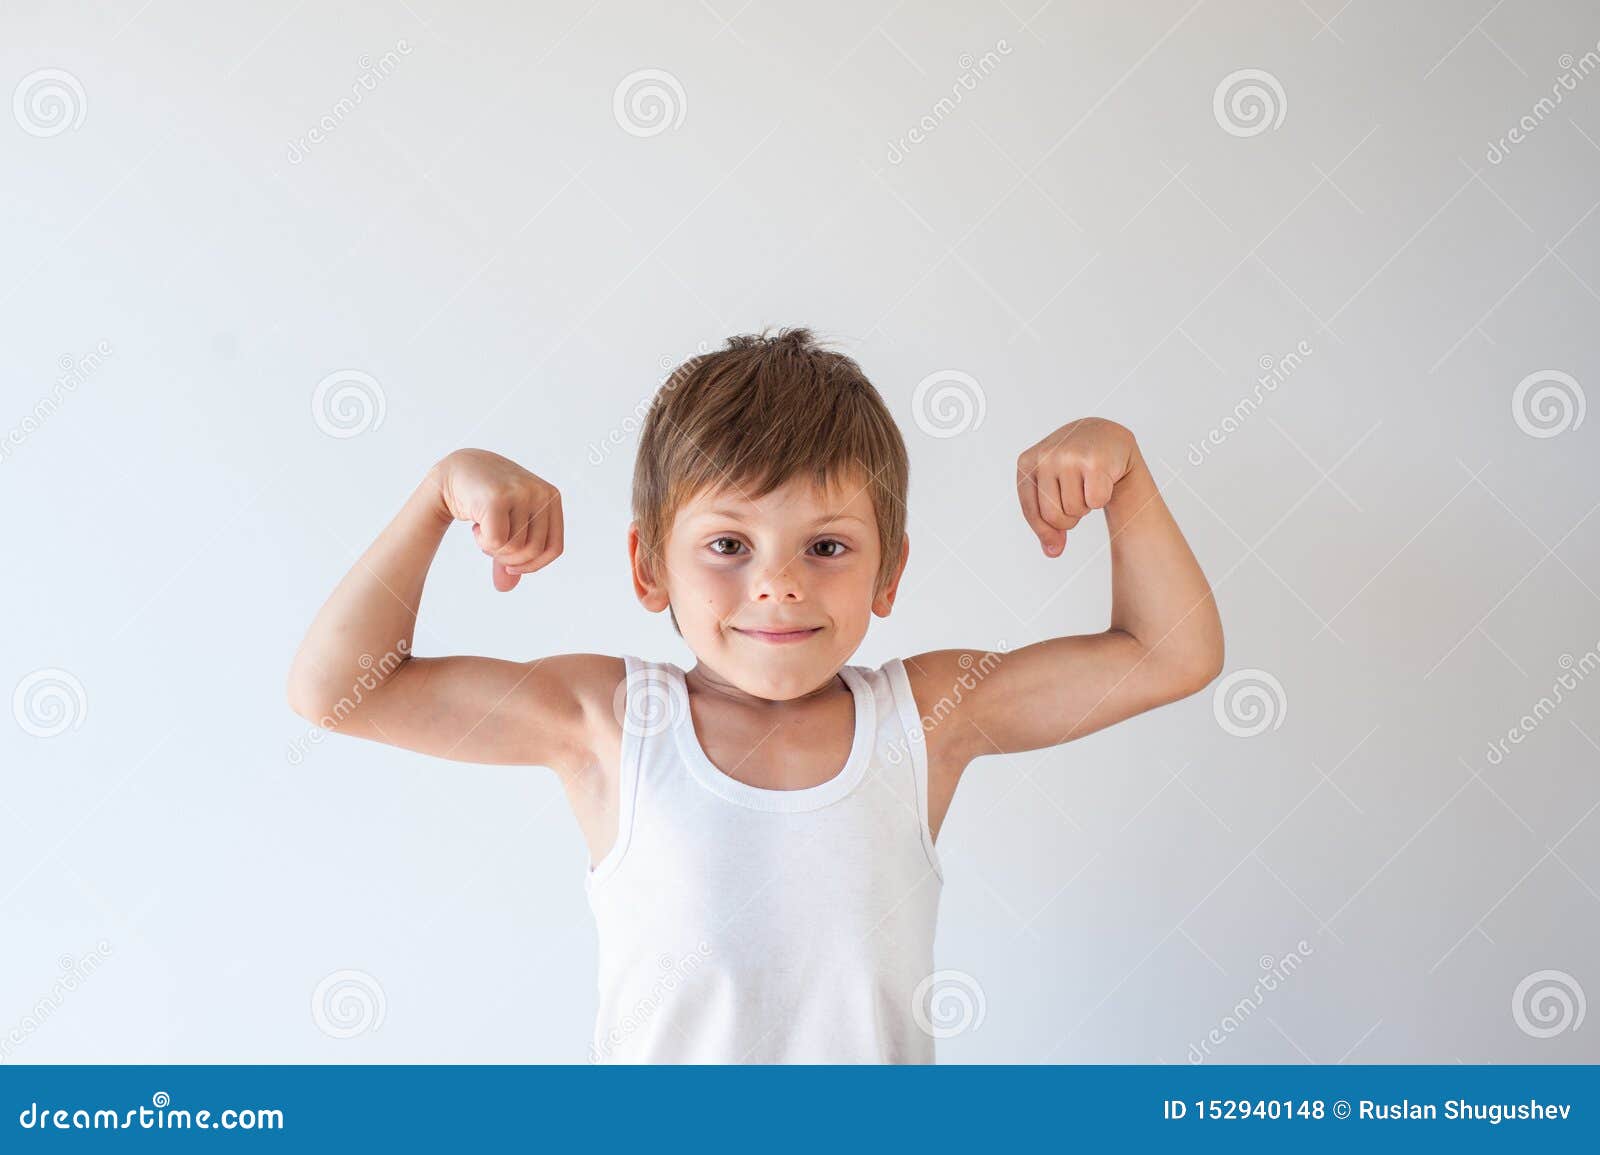 Как стать сильнее мальчика. Мальчик здоровый и сильный. Сильный мальчик. Сильный и здоровый ребенок. Здоровый и сильный малыш.